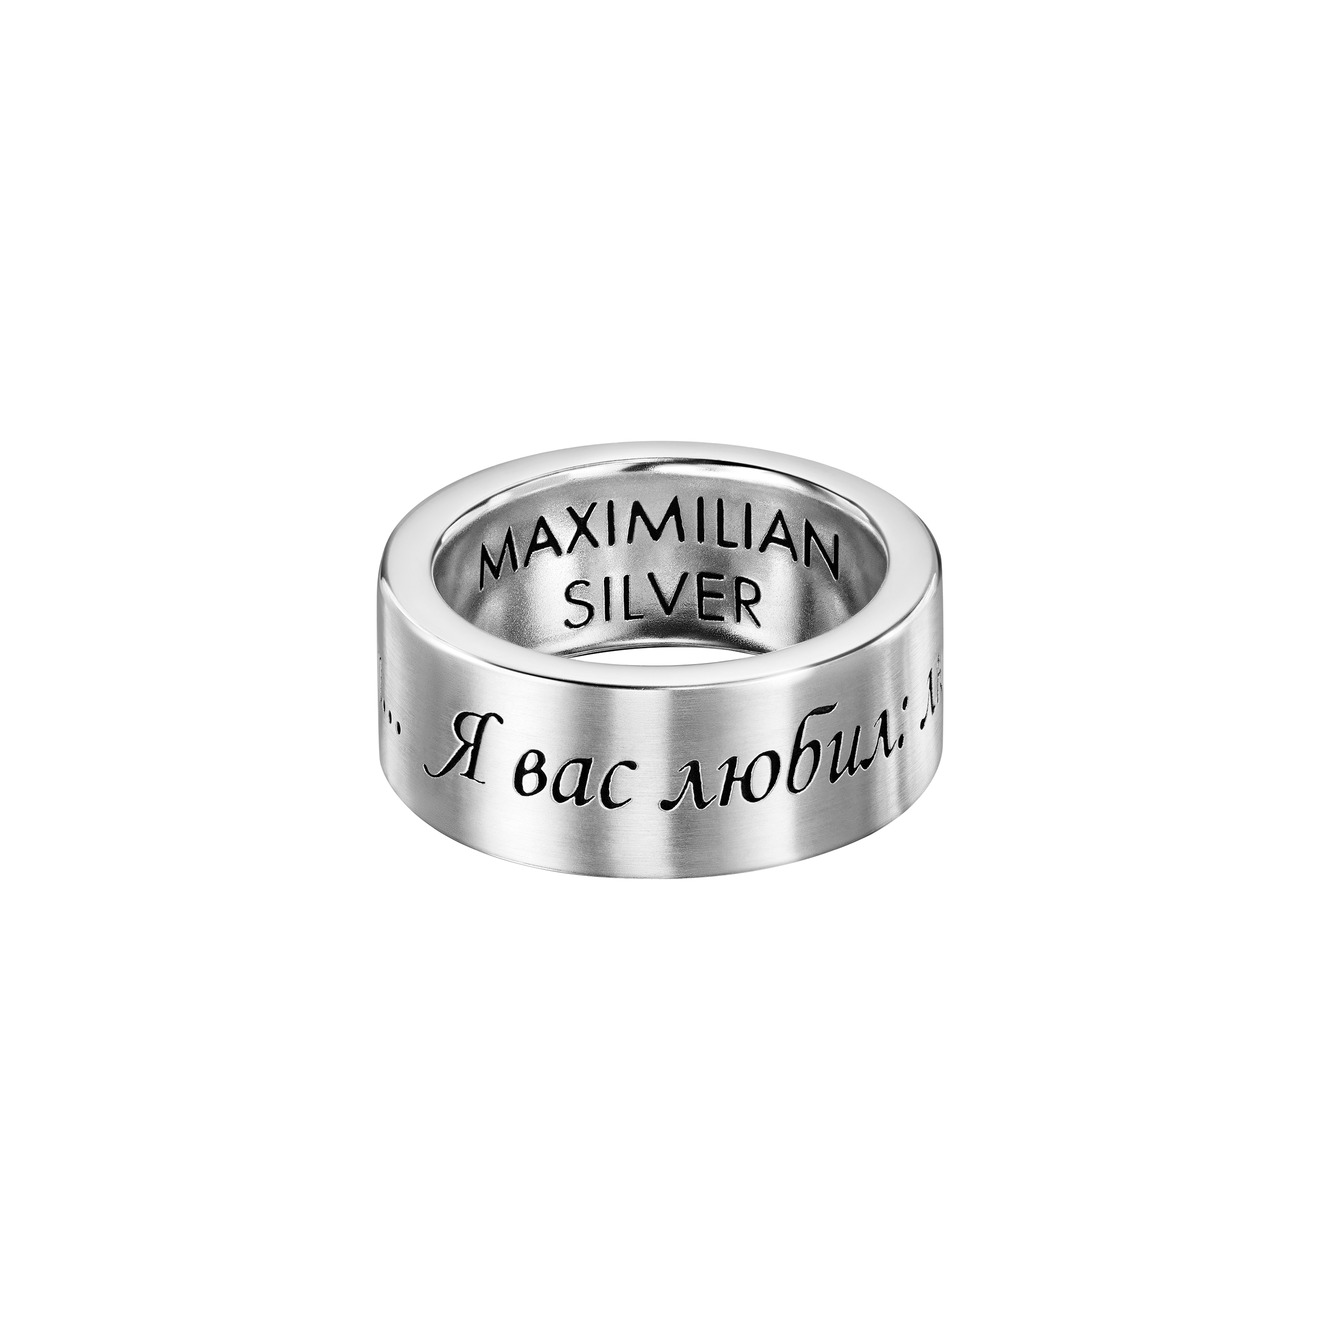 Maximilian Silver Label Кольцо из серебра с гравировкой Я вас любил maximilian silver label подвеска талисман из серебра пуля с покрытием розовым золотом